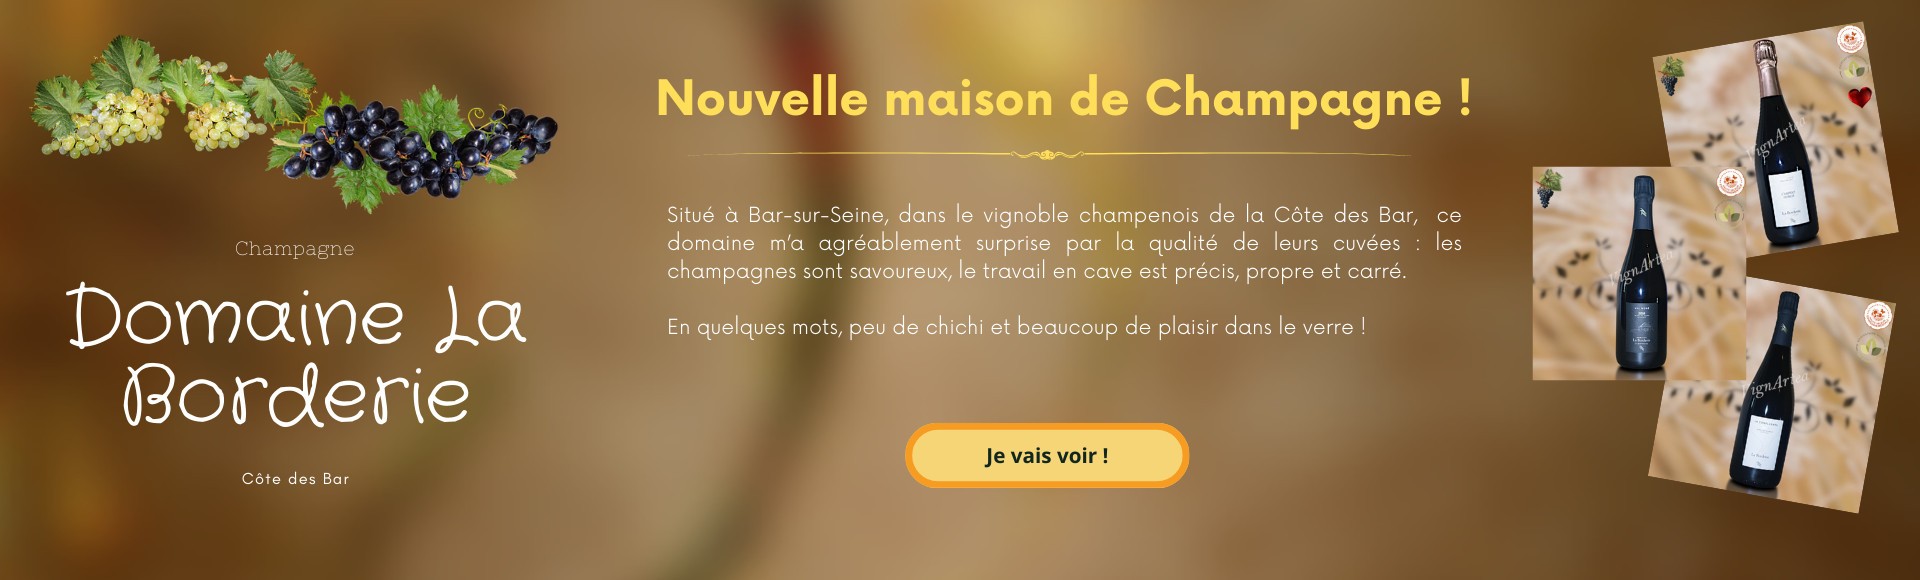 Domaine La Borderie - Champagne